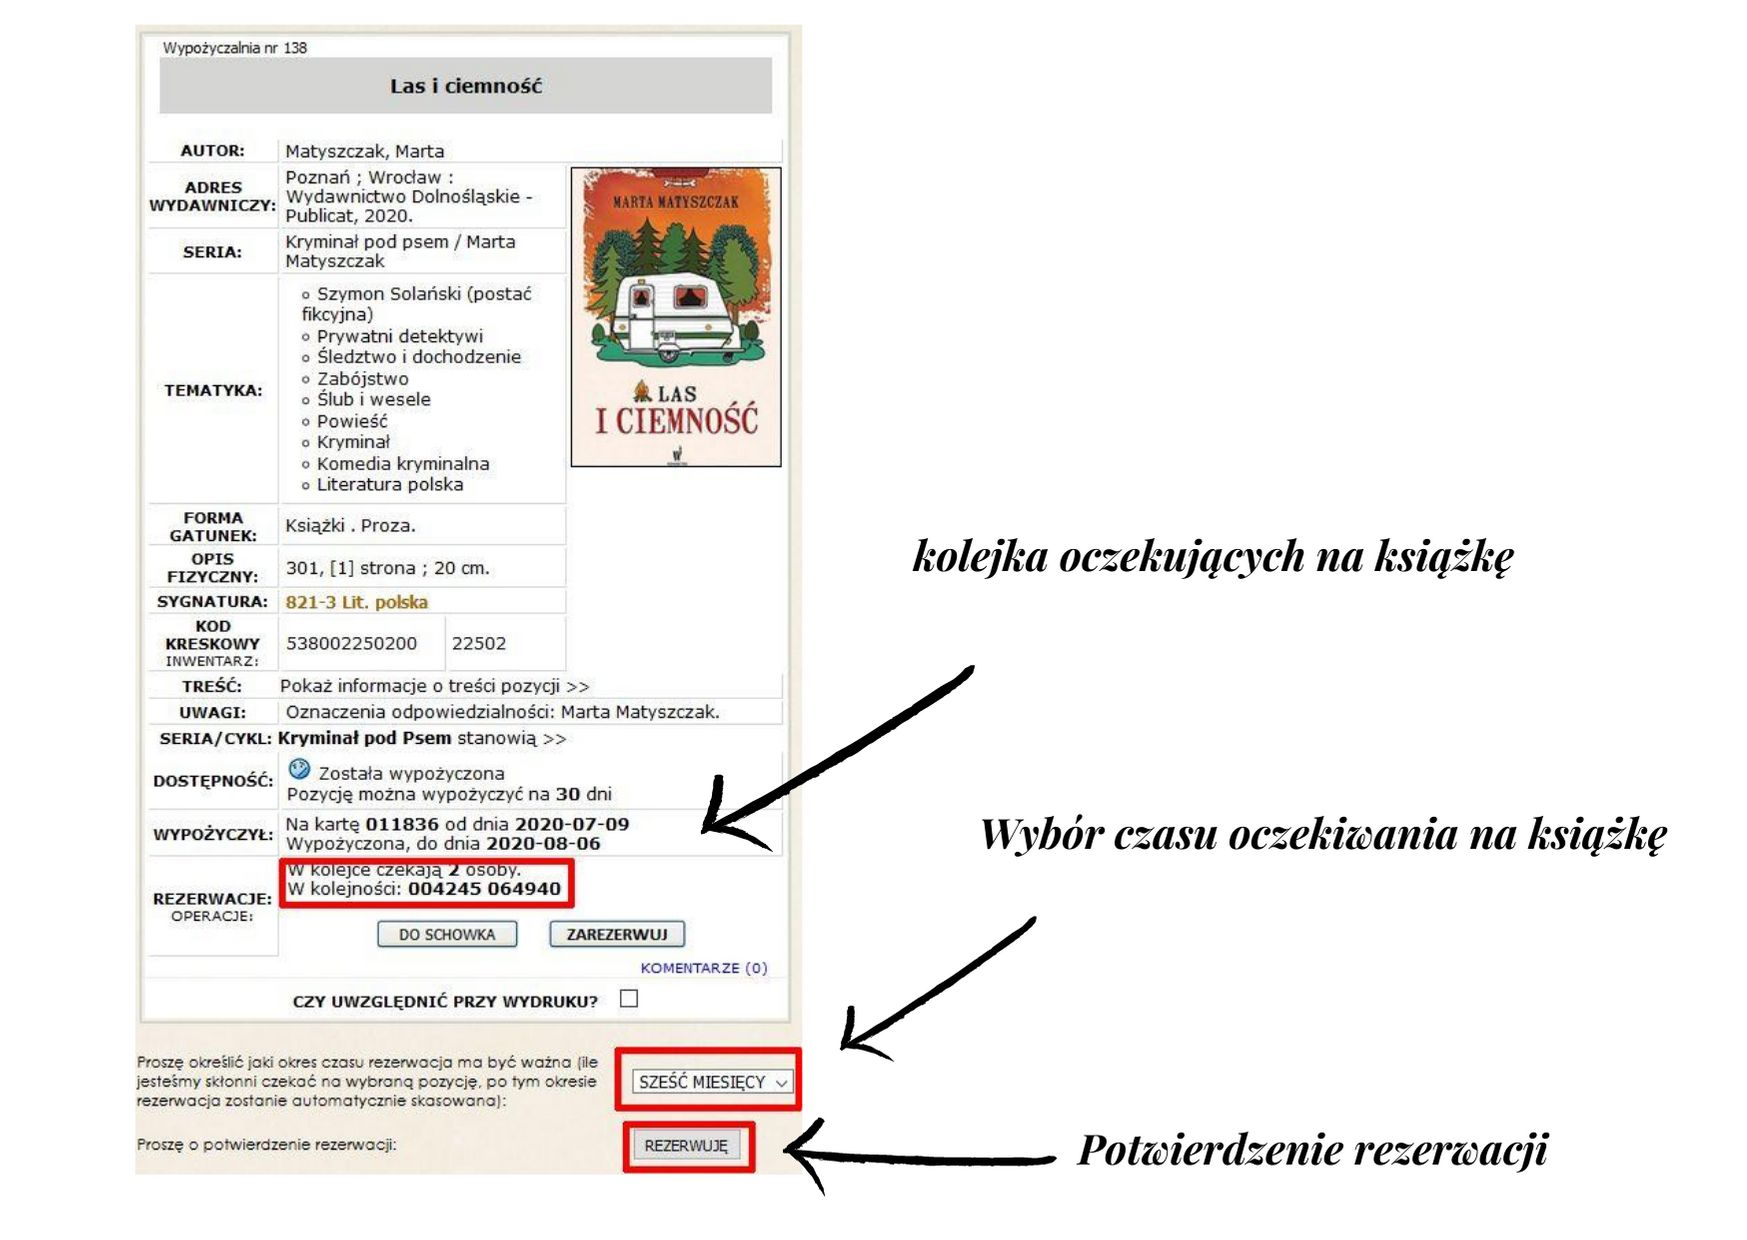 proces rezerwacji książki – karta katalogowa książki z zaznaczonymi na niej: kolejką rezerwacji, polem do wyboru czasu rezerwacji oraz przyciskiem potwierdzającym rezerwację